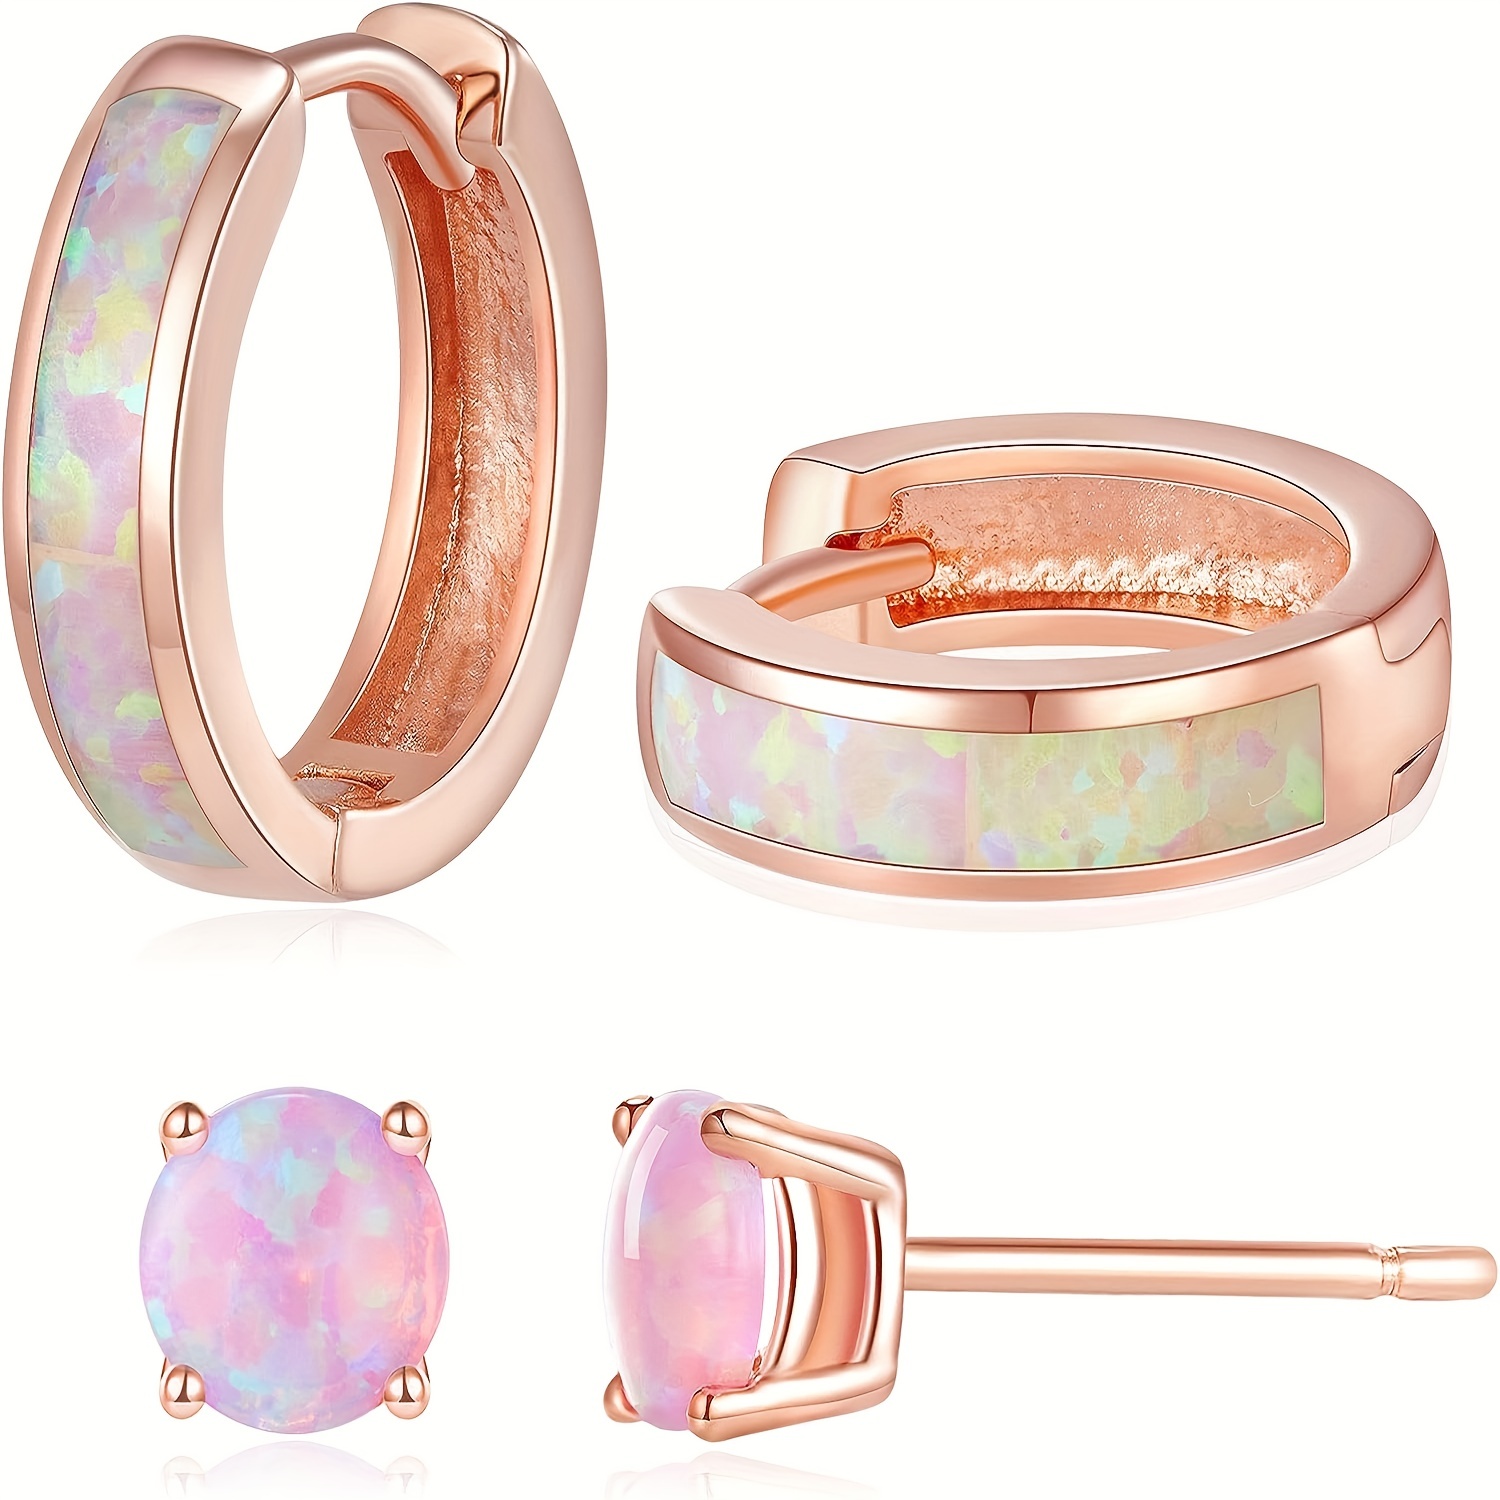 

Opal Stud Earrings Huggie Earrings Hoop Earrings Set, Small Cute Colorful Hoops Earrings For Women ( 3 Colors Available )